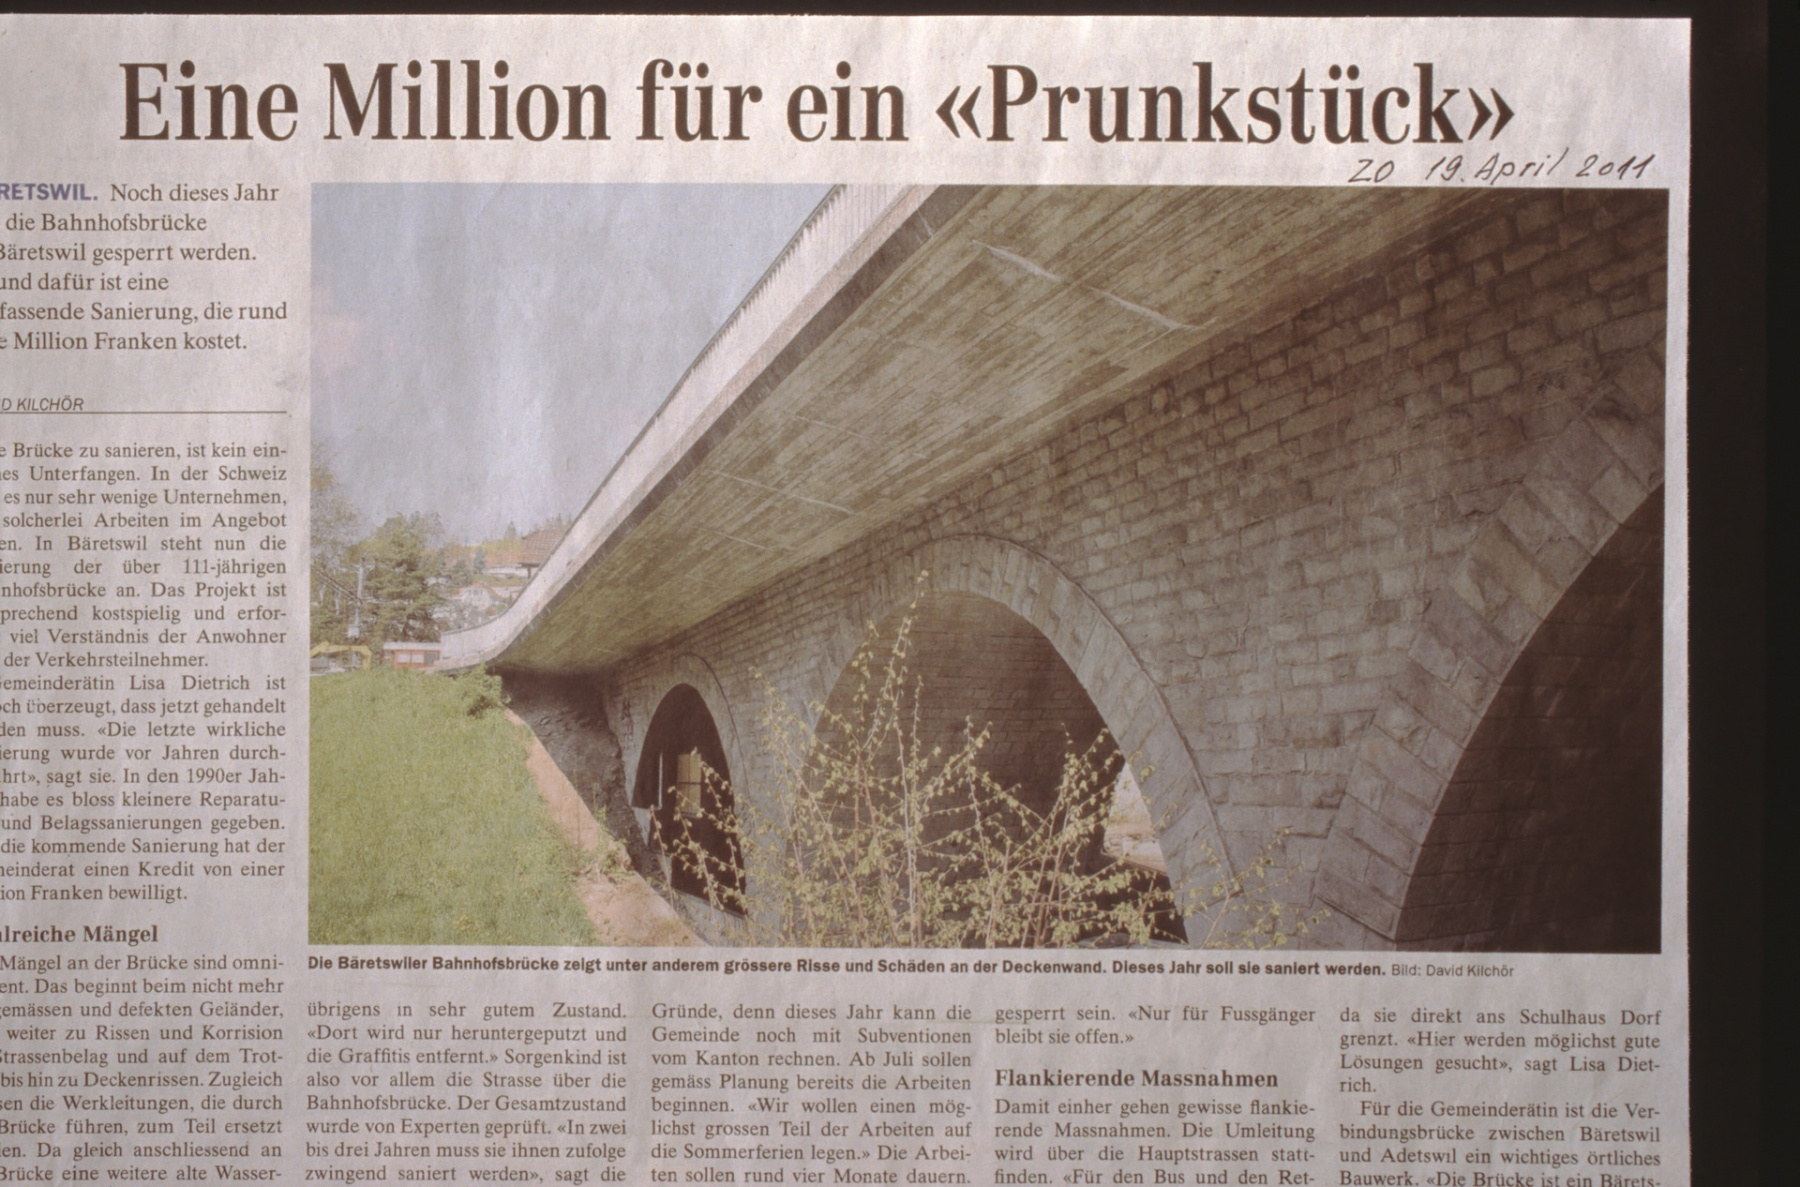 Bahnhofbrücke «Eine Million für ein Prunkstück»